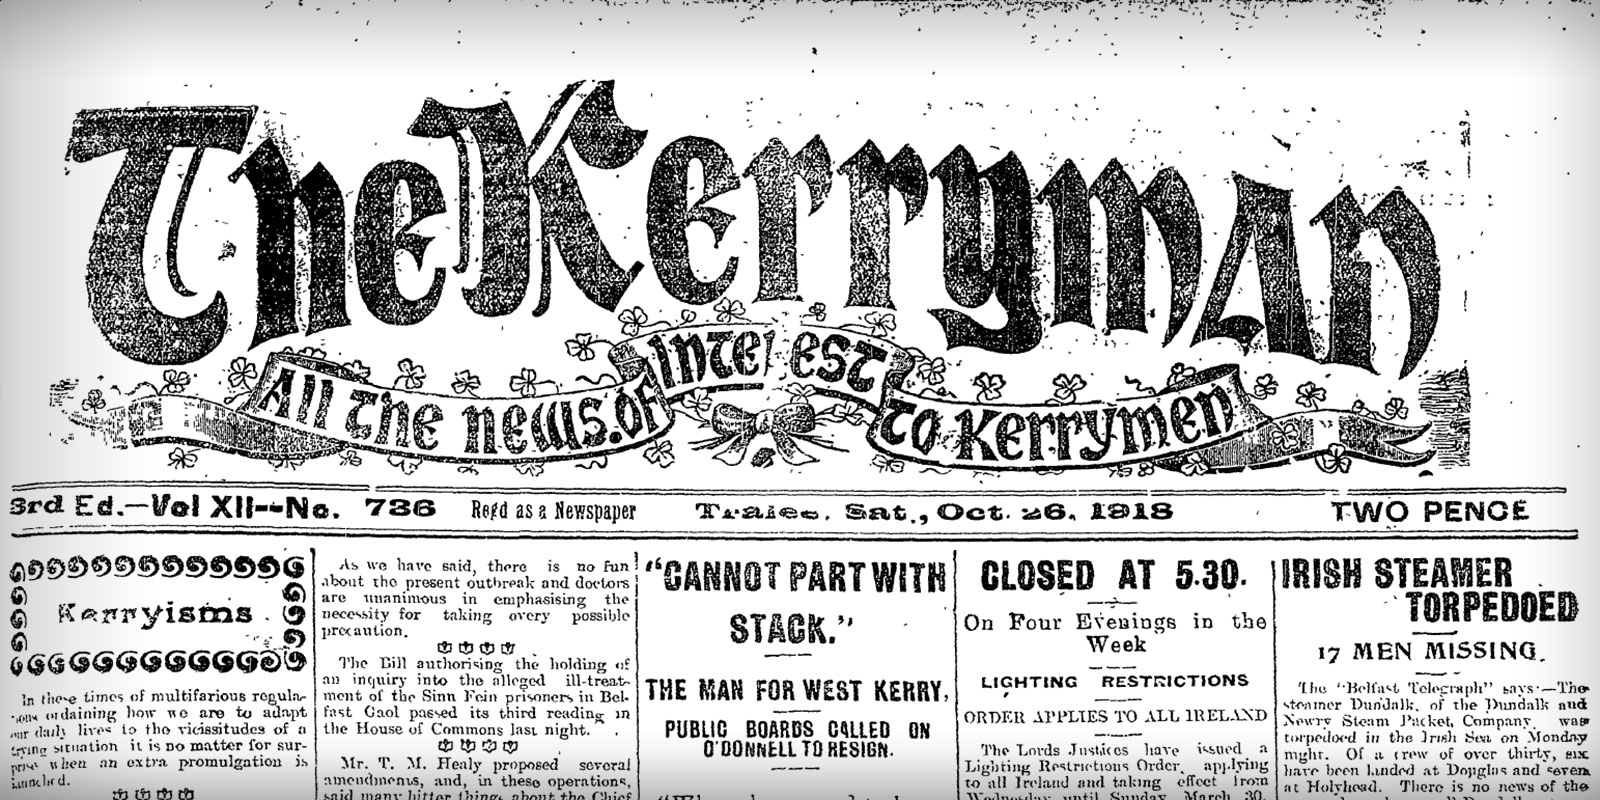 Ag póirseáil dom sna sean-nuachtáin, ghreamaigh mo shúile d’eagrán an Kerryman an 26 Deireadh Fómhair 1918